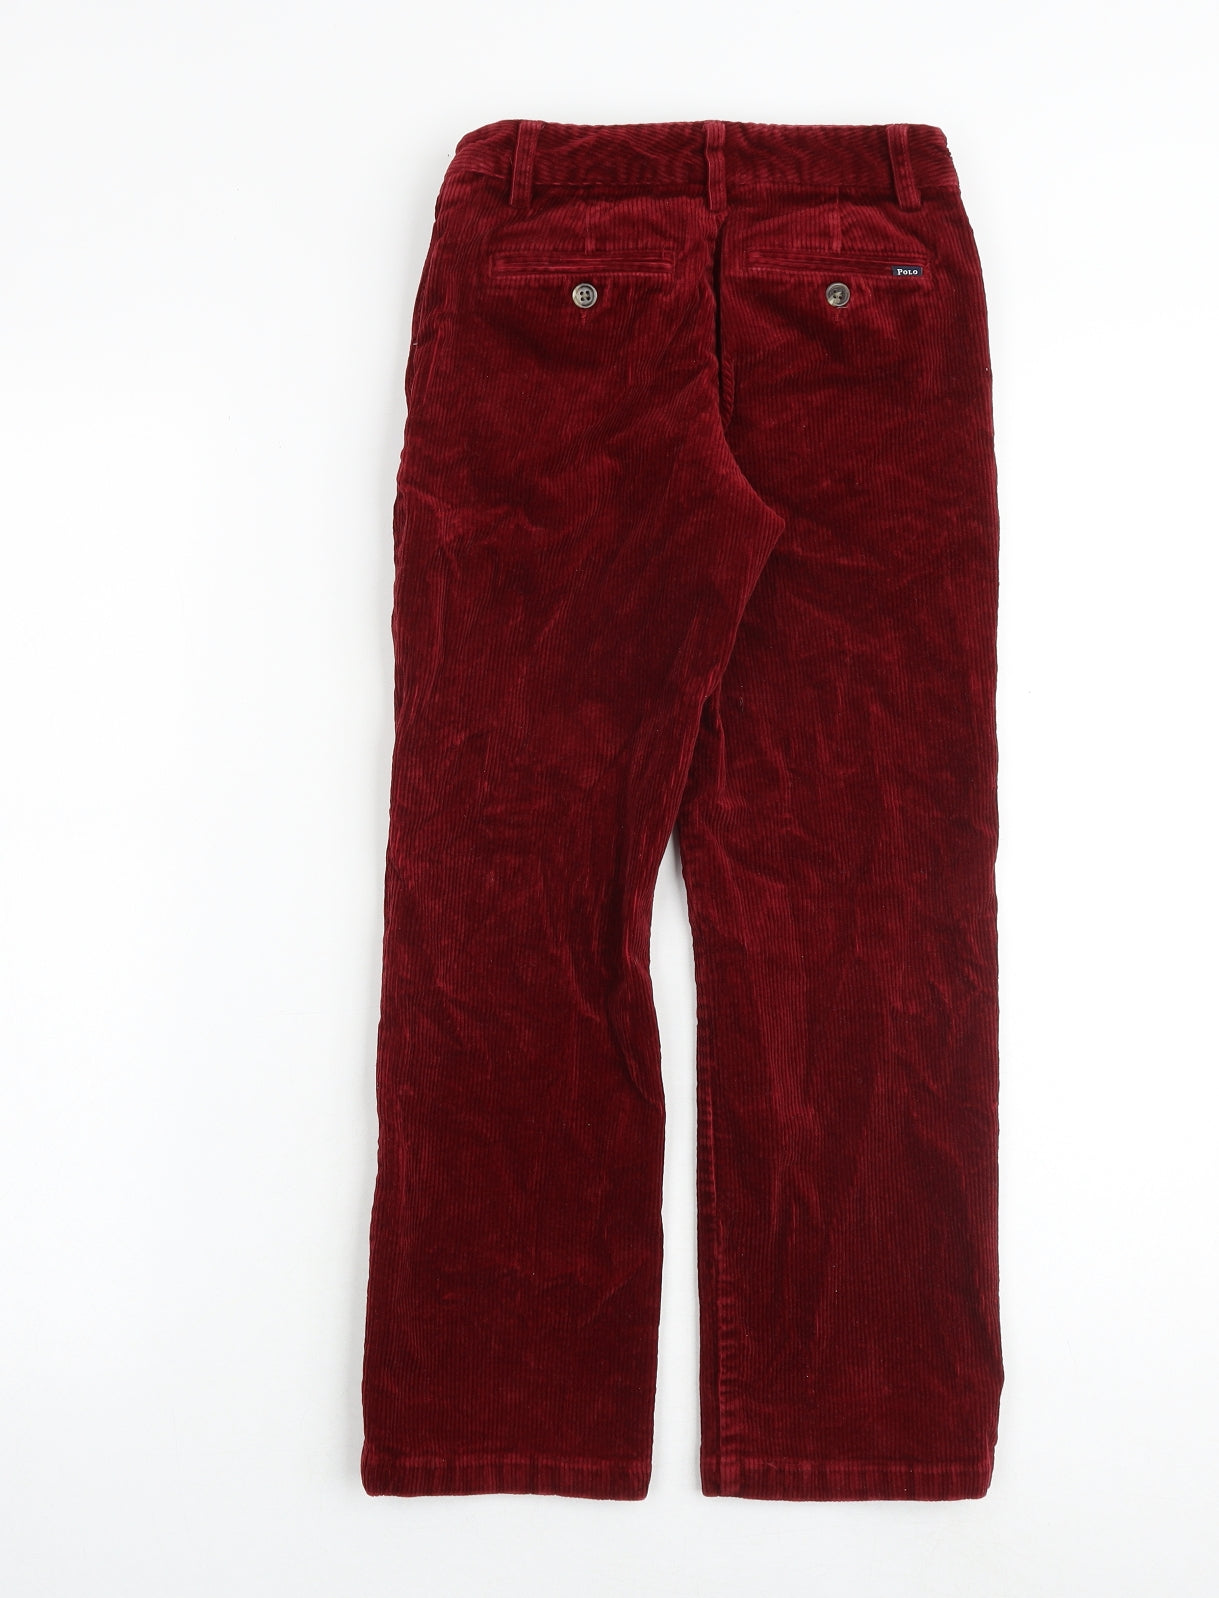 Ralph Lauren Girls Red Cotton Chino Trousers Size 8 Years Regular Zip